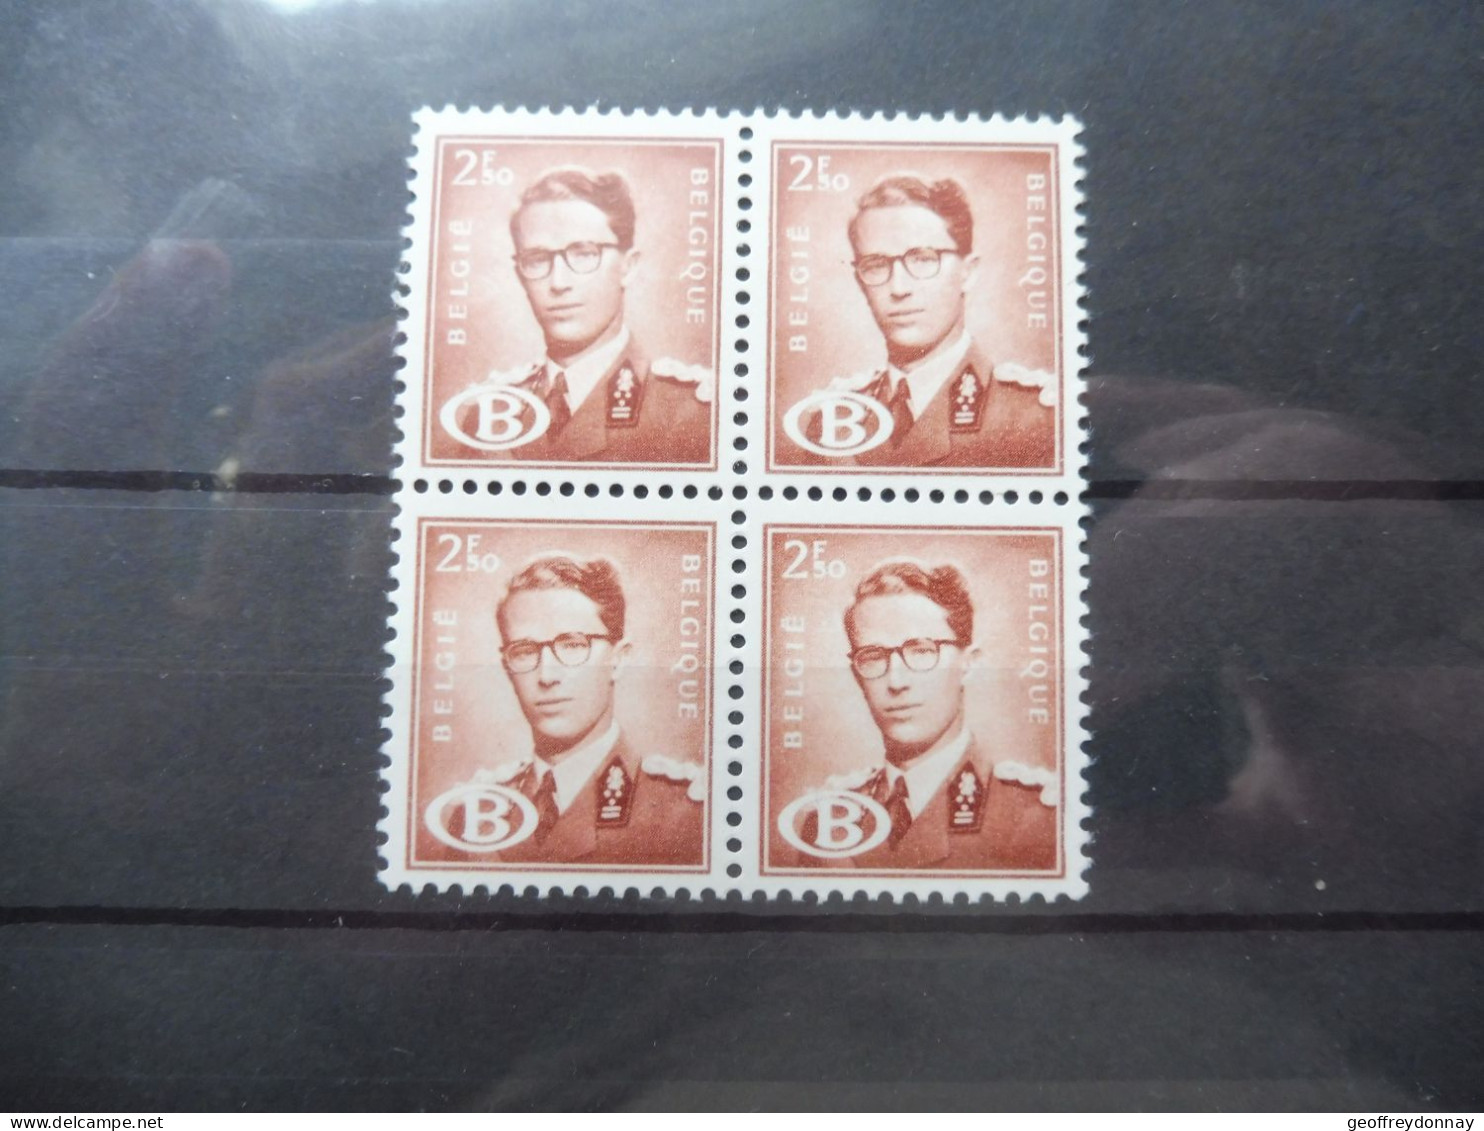 Belgique Belgie Dienstzegels Service Bl Bloc Blok De 4 S S 60 Baudouin Boudewijn Neuf Luxe Mnh ** 1954 - Mint